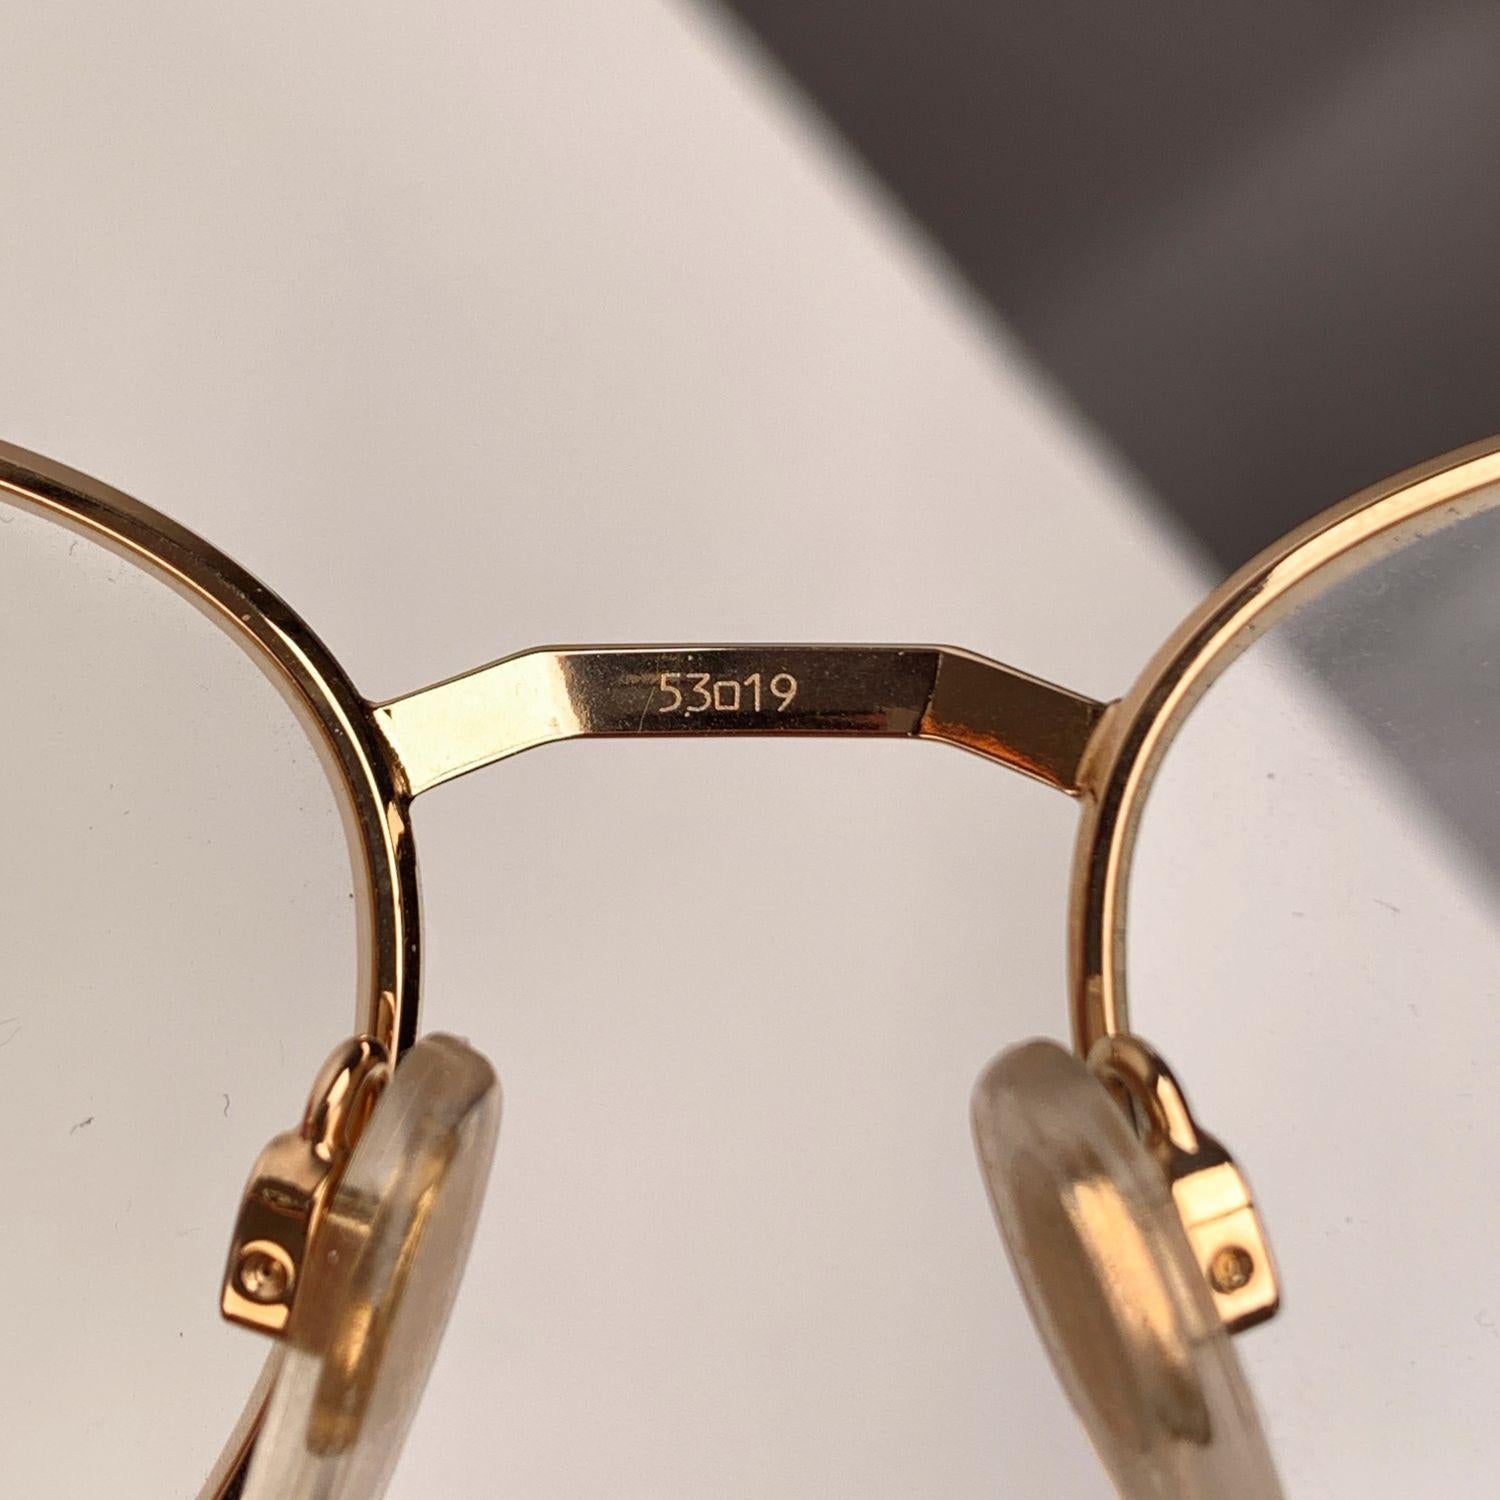 Gerald Genta Vintage Eyeglasses Gold Plated Success 02 135 mm 2